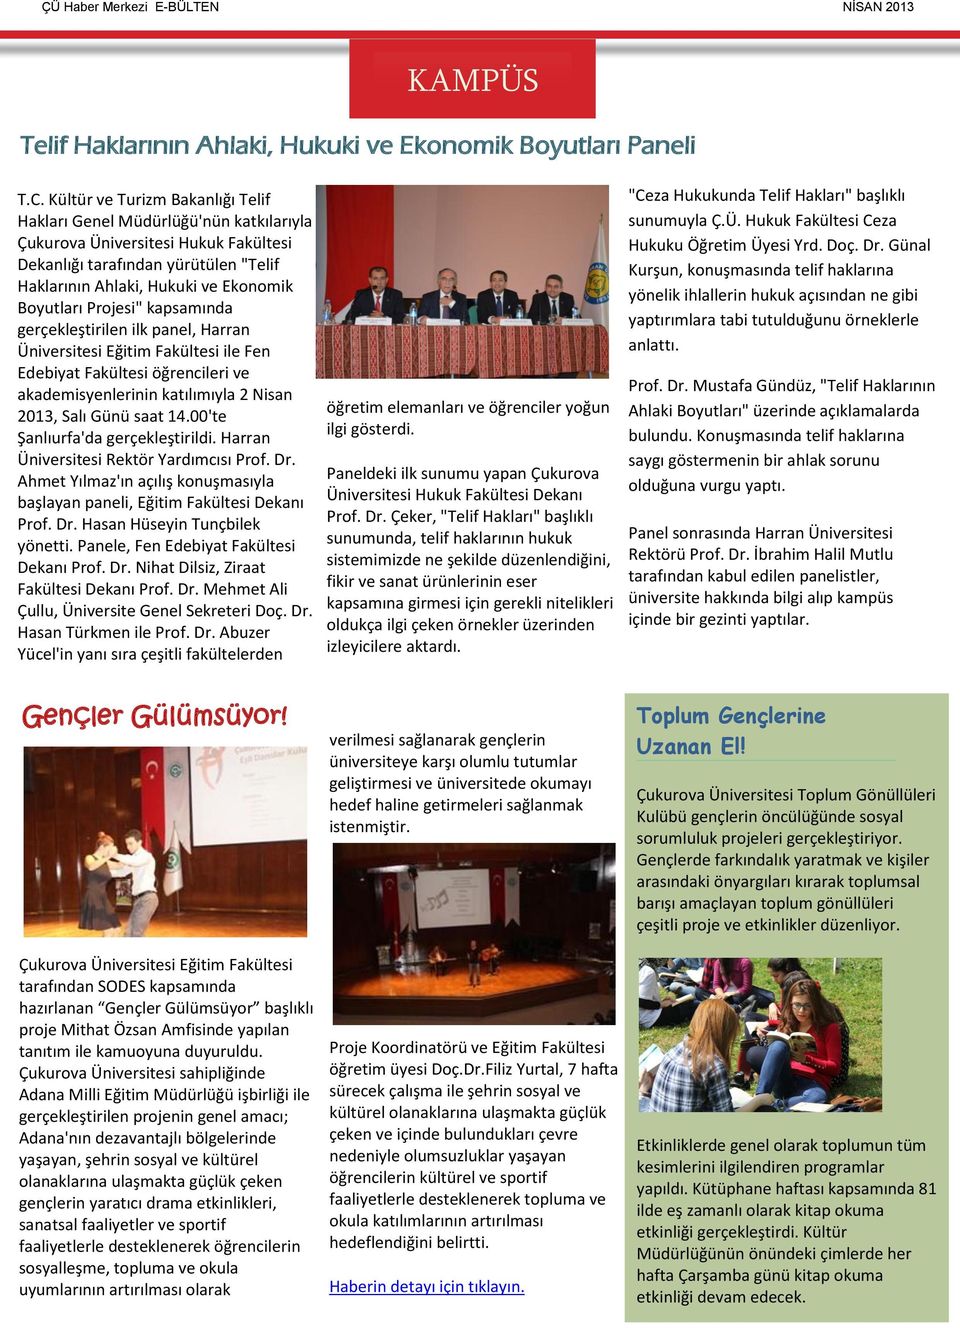 Projesi" kapsamında gerçekleştirilen ilk panel, Harran Üniversitesi Eğitim Fakültesi ile Fen Edebiyat Fakültesi öğrencileri ve akademisyenlerinin katılımıyla 2 Nisan 2013, Salı Günü saat 14.